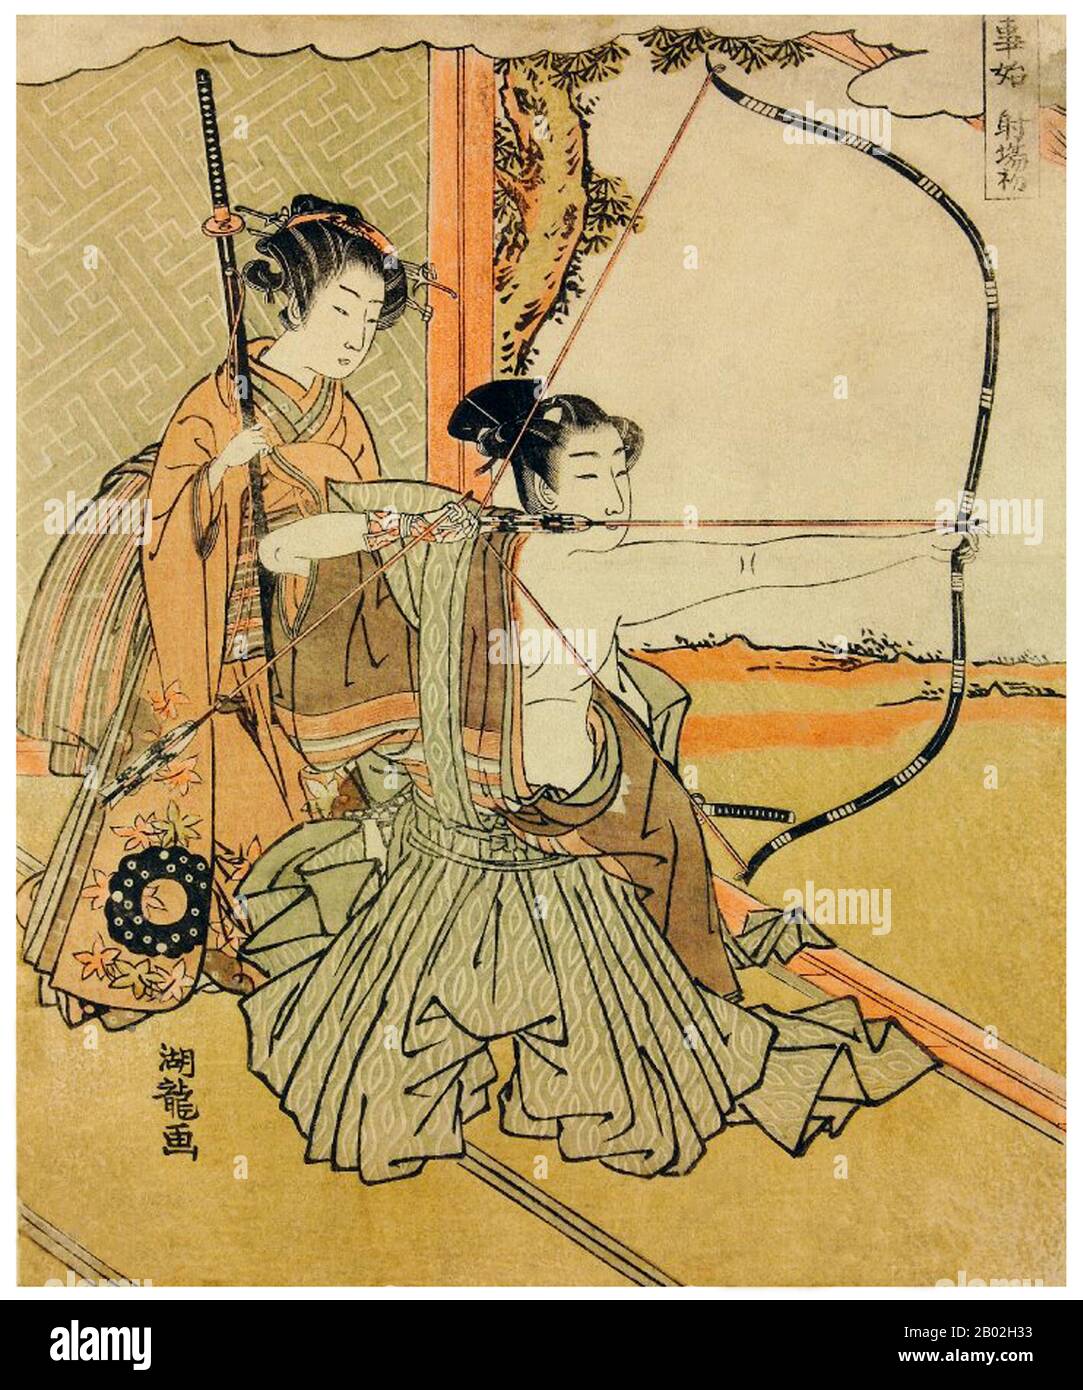 Samurai est le terme de la noblesse militaire du Japon pré-industriel. À la fin du XIIe siècle, le samouraï est devenu presque entièrement synonyme de bushi, et le mot était étroitement associé aux échelons moyen et supérieur de la classe guerrière. Le samouraï a suivi un ensemble de règles qui sont venus à être connu sous le nom de Bushidō. Bien qu'ils aient compté moins de dix pour cent de la population japonaise, les enseignements du samouraï peuvent encore être trouvés aujourd'hui dans la vie quotidienne et dans les arts martiaux comme Kendō, ce qui signifie le chemin de l'épée. Banque D'Images